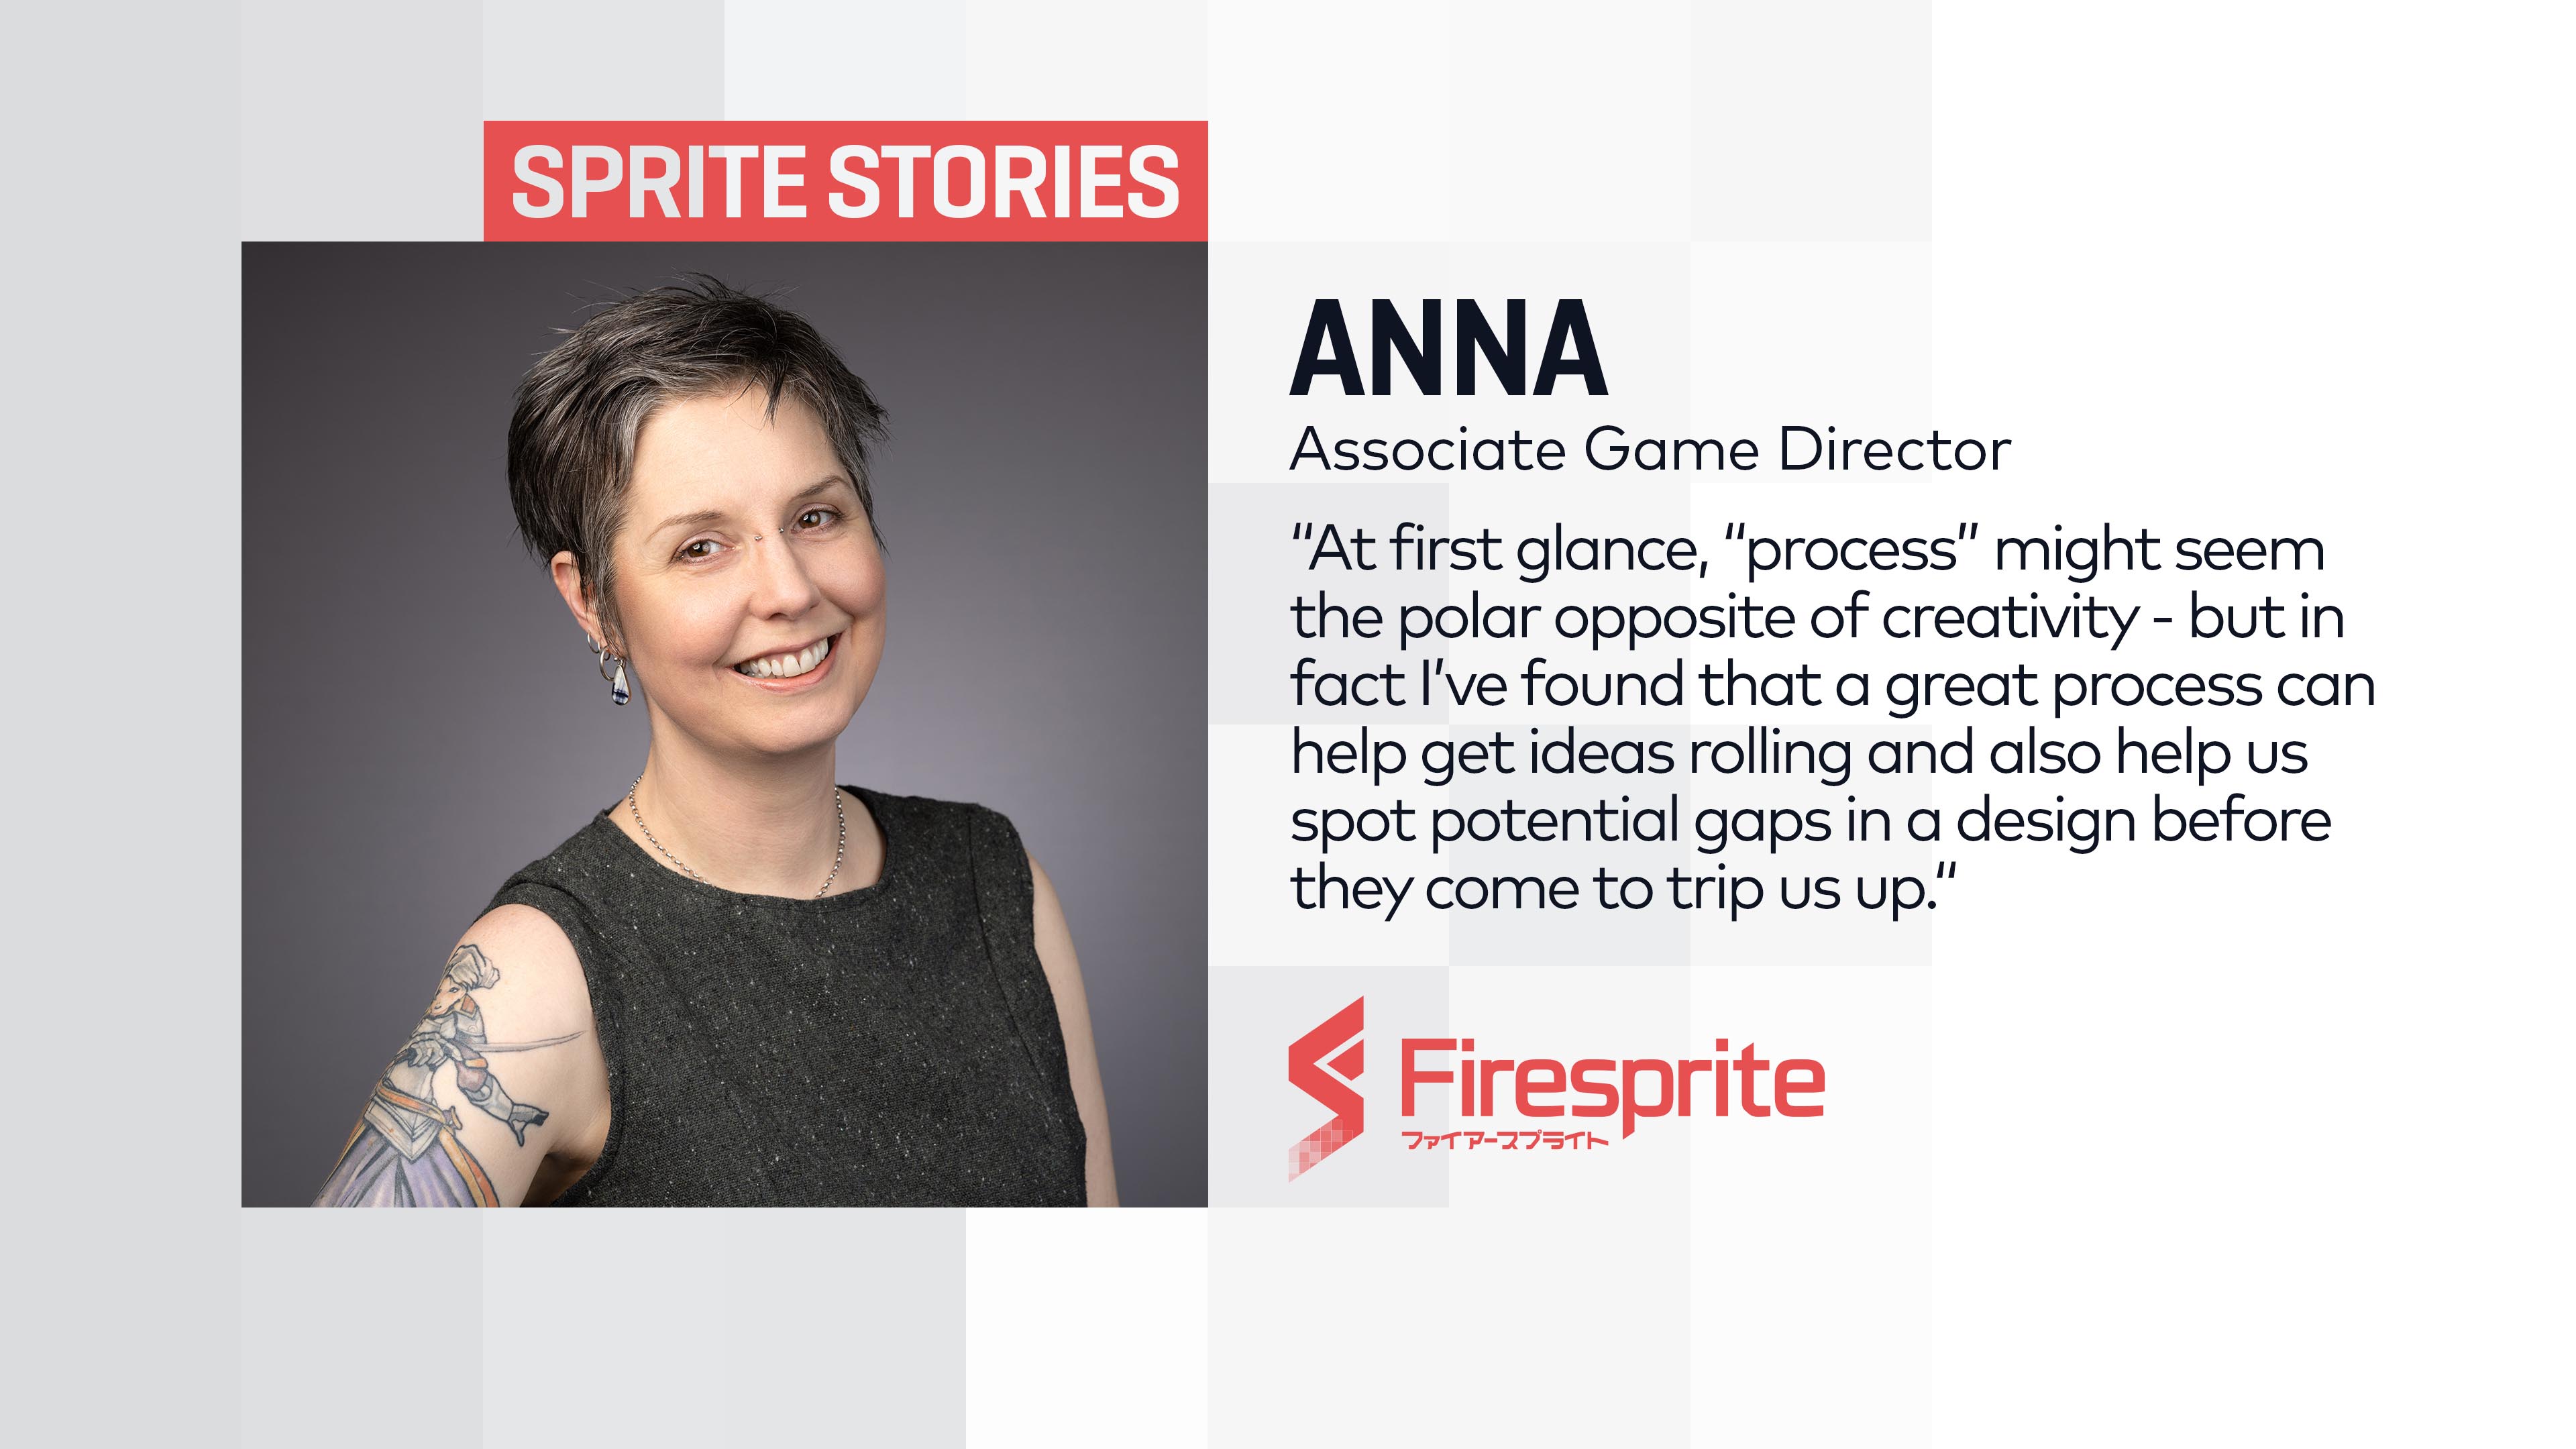 Anna Sprite Stories Quote